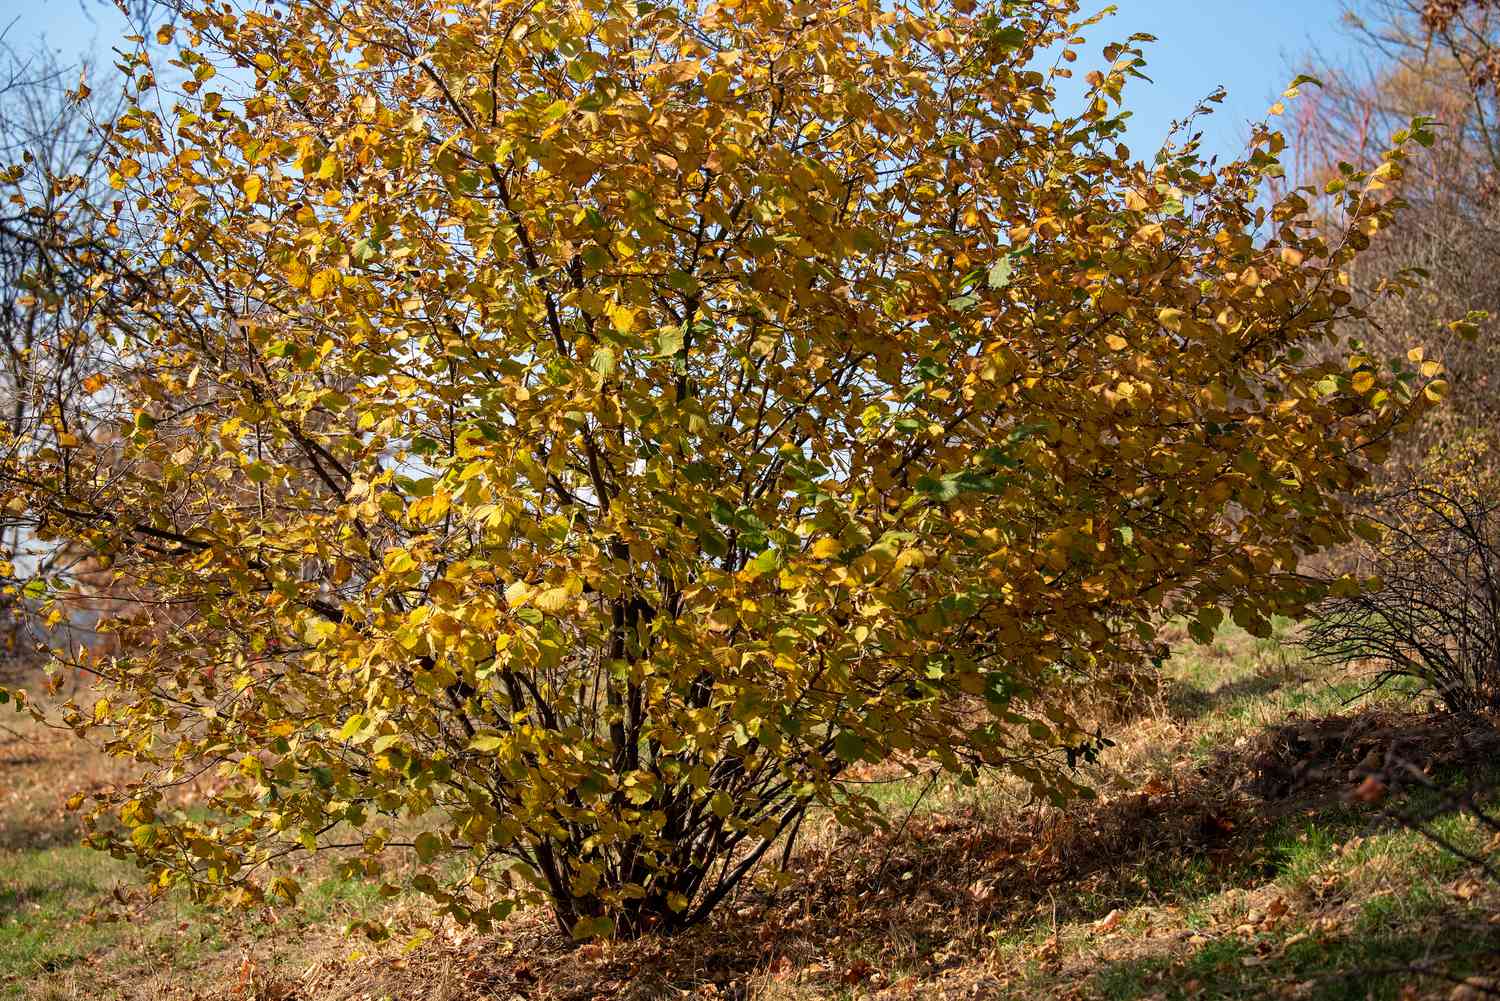 Schnabelhaselnussstrauch mit gelben Blättern an langen Ästen